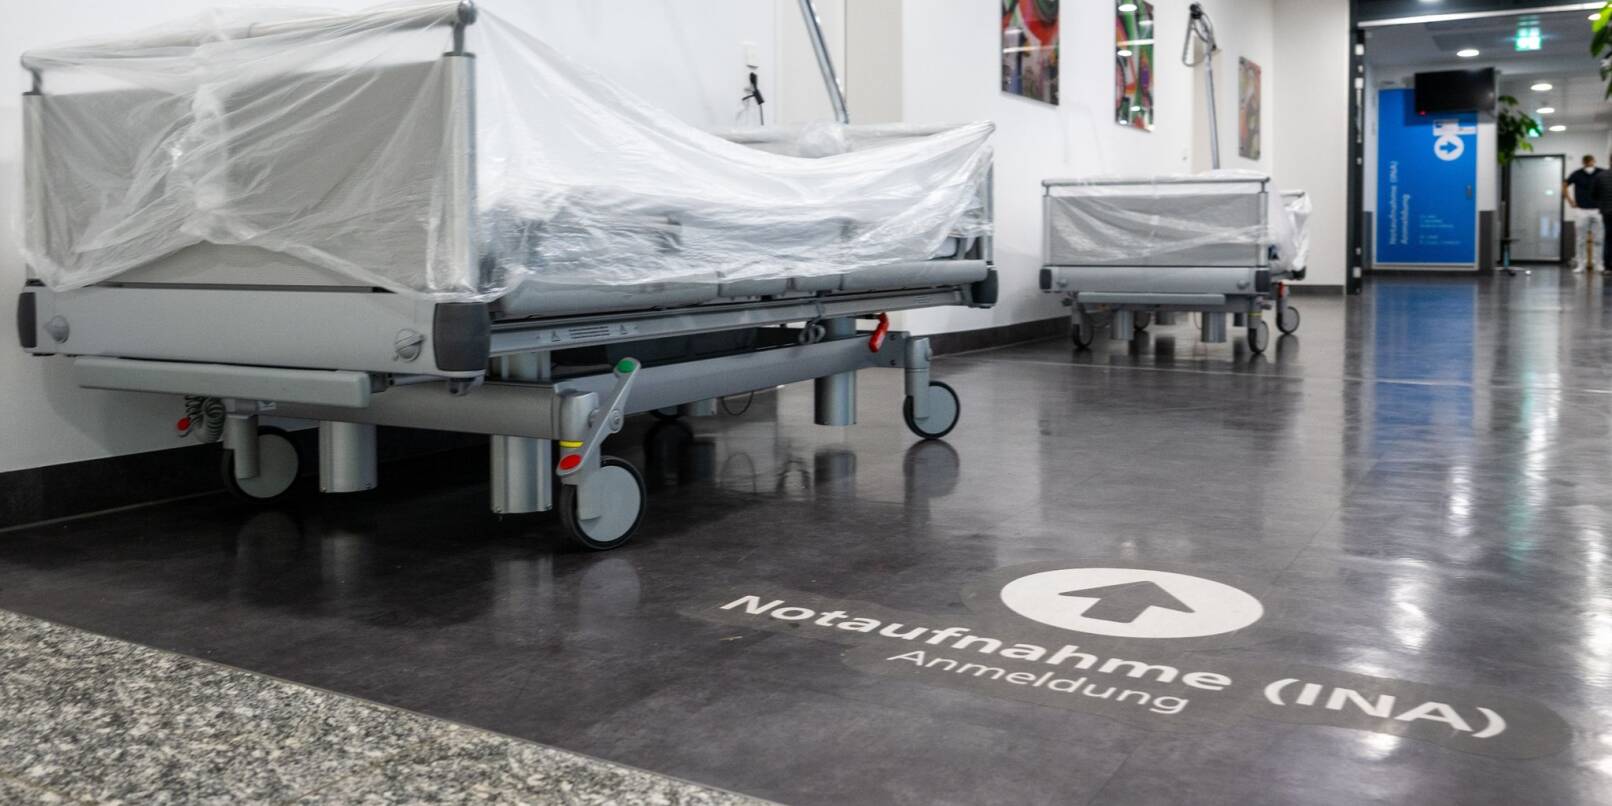 Patientenbetten stehen im Krankenhaus vor der Notaufnahme.